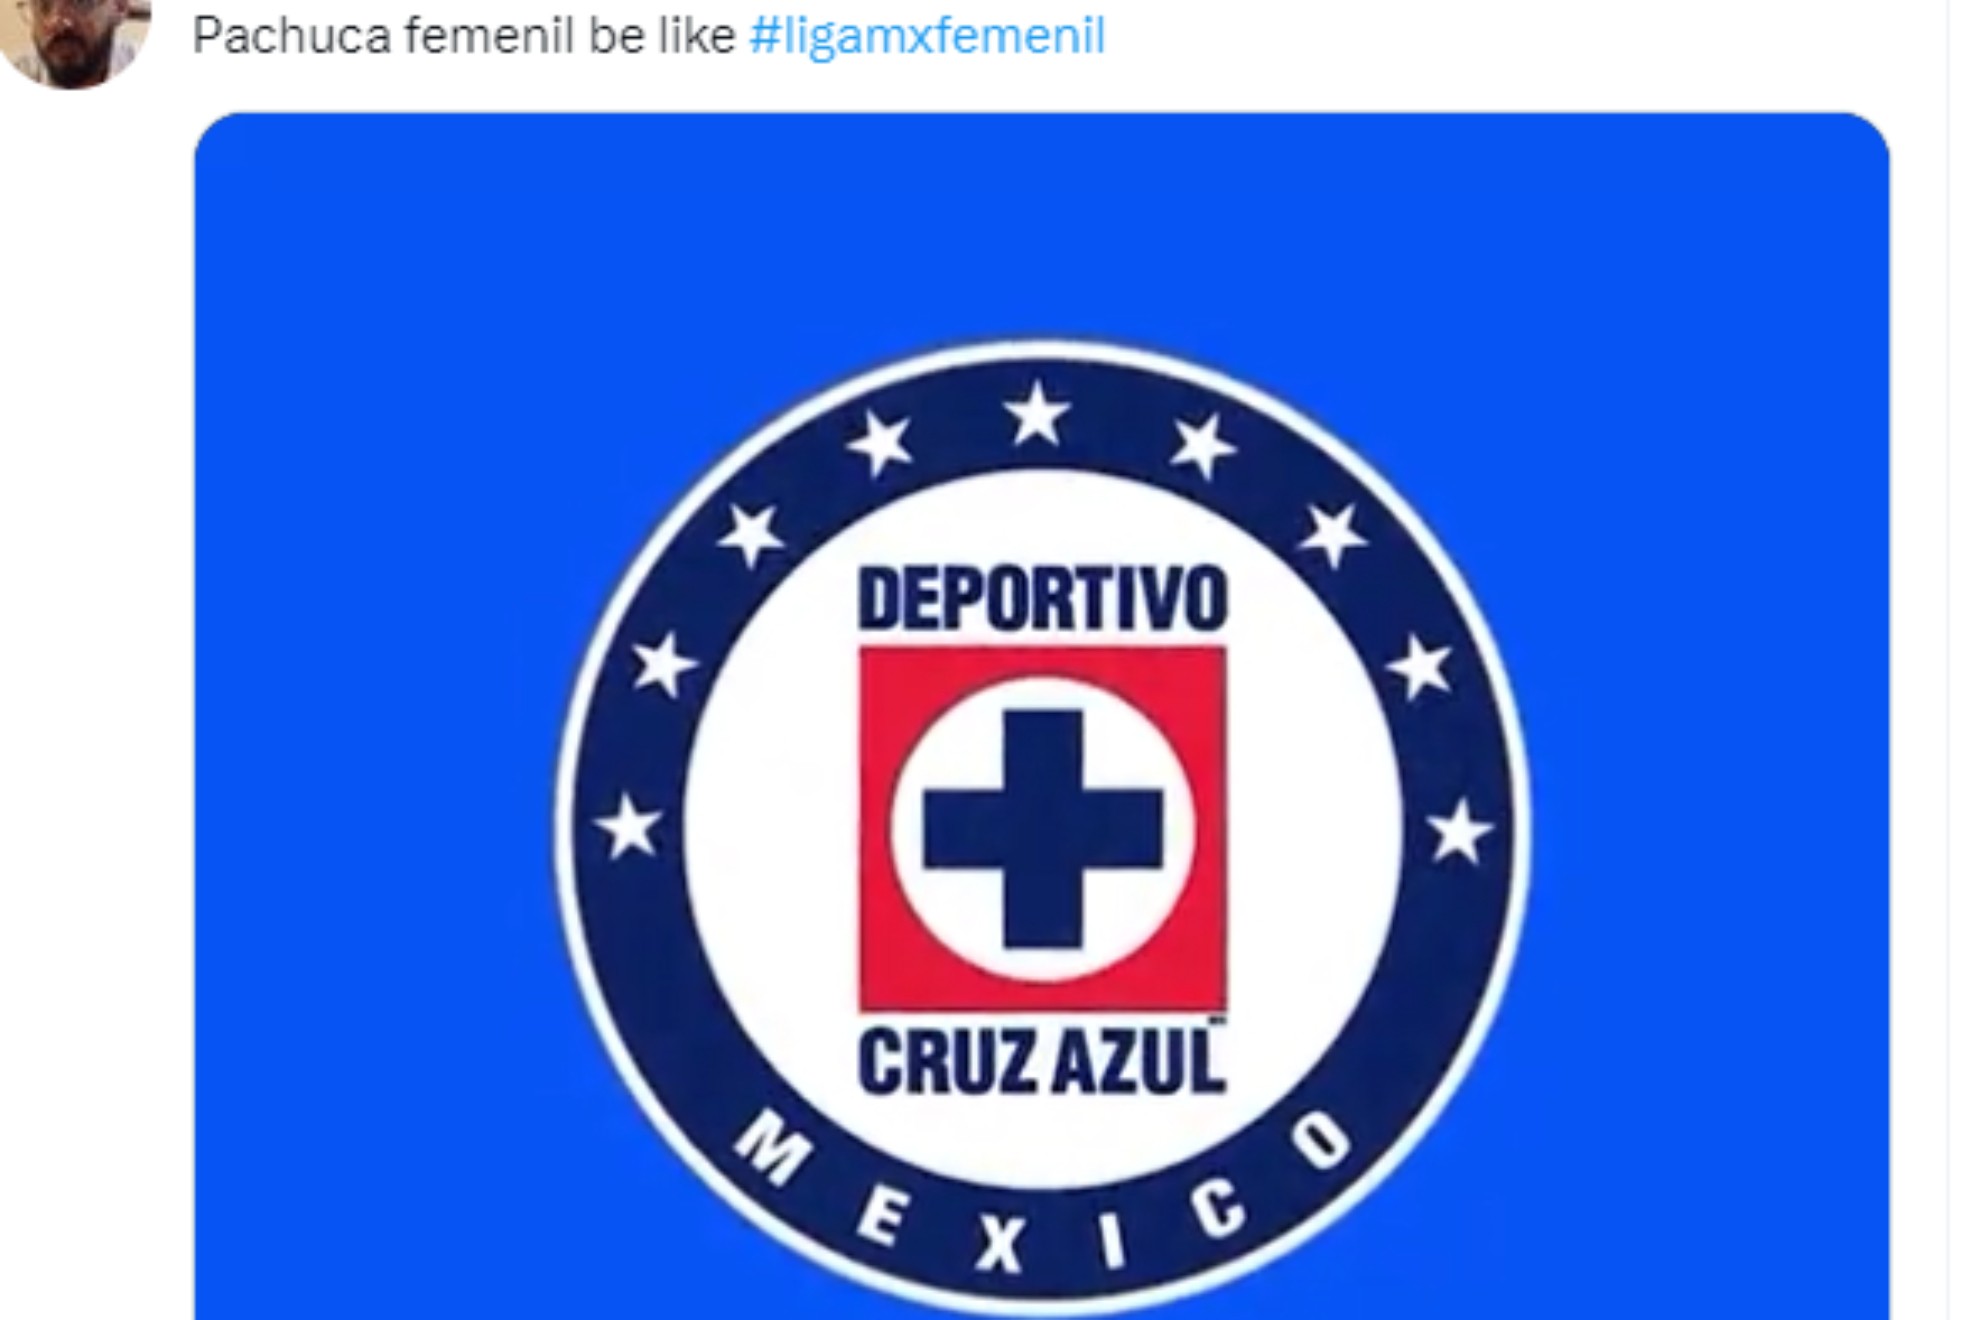 Las Tuzas perdieron su tercera final de la Liga MX Femenil y an no han sido campeonas, por ello, las burlas de los usuarios de redes sociales no las dejaron en paz tras la derrota ante el Amrica en el Estadio Azteca.